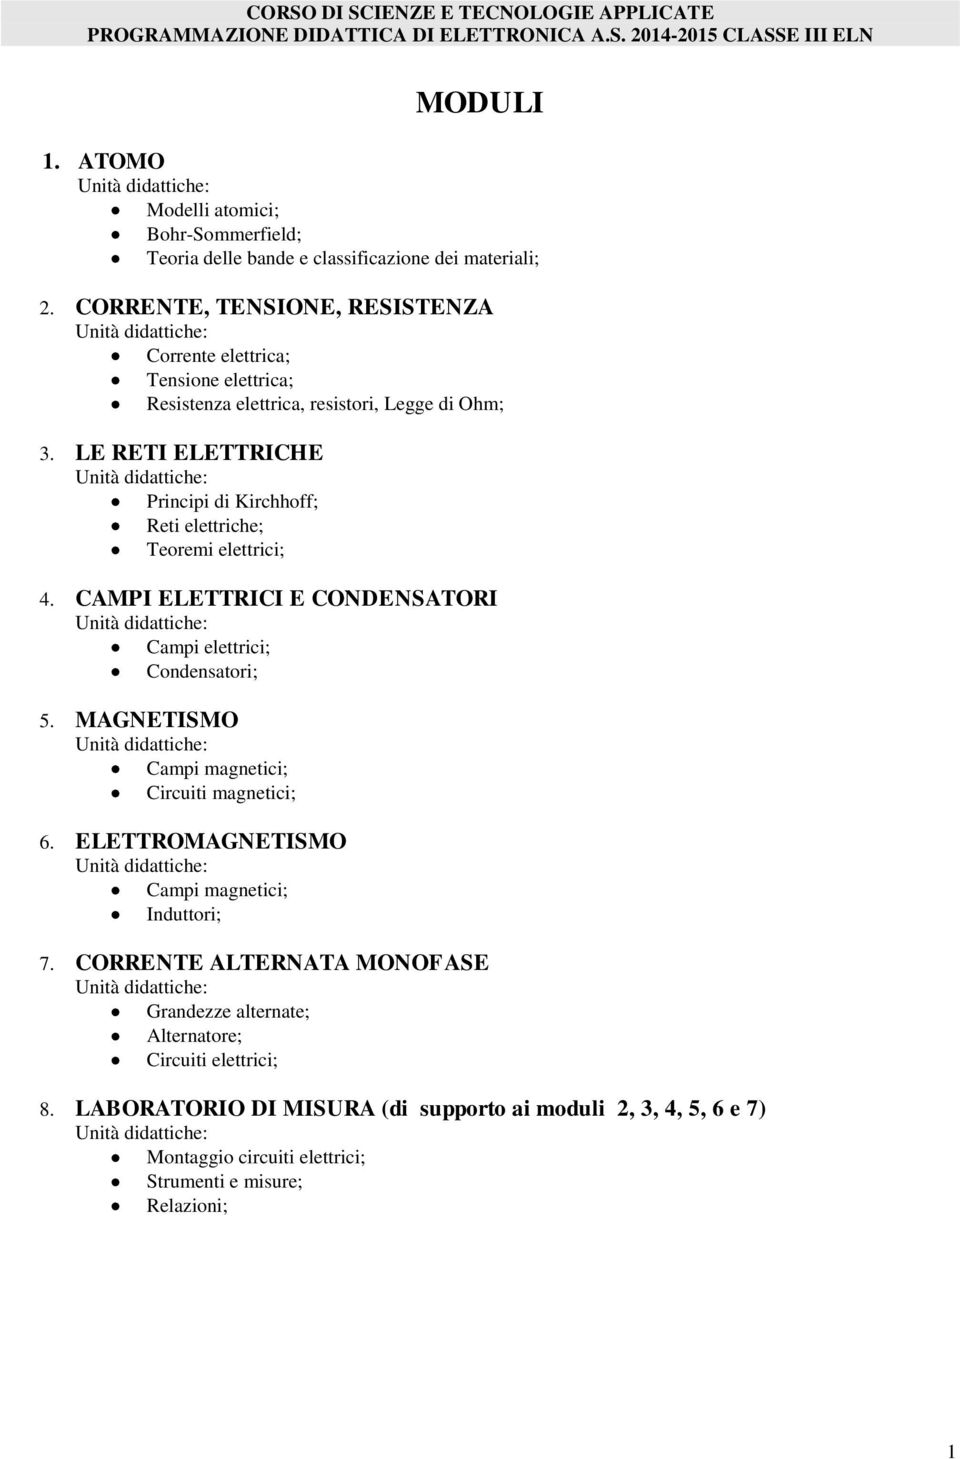 LE RETI ELETTRICHE Principi di Kirchhoff; Reti elettriche; Teoremi elettrici; 4. CAMPI ELETTRICI E CONDENSATORI Campi elettrici; Condensatori; 5.